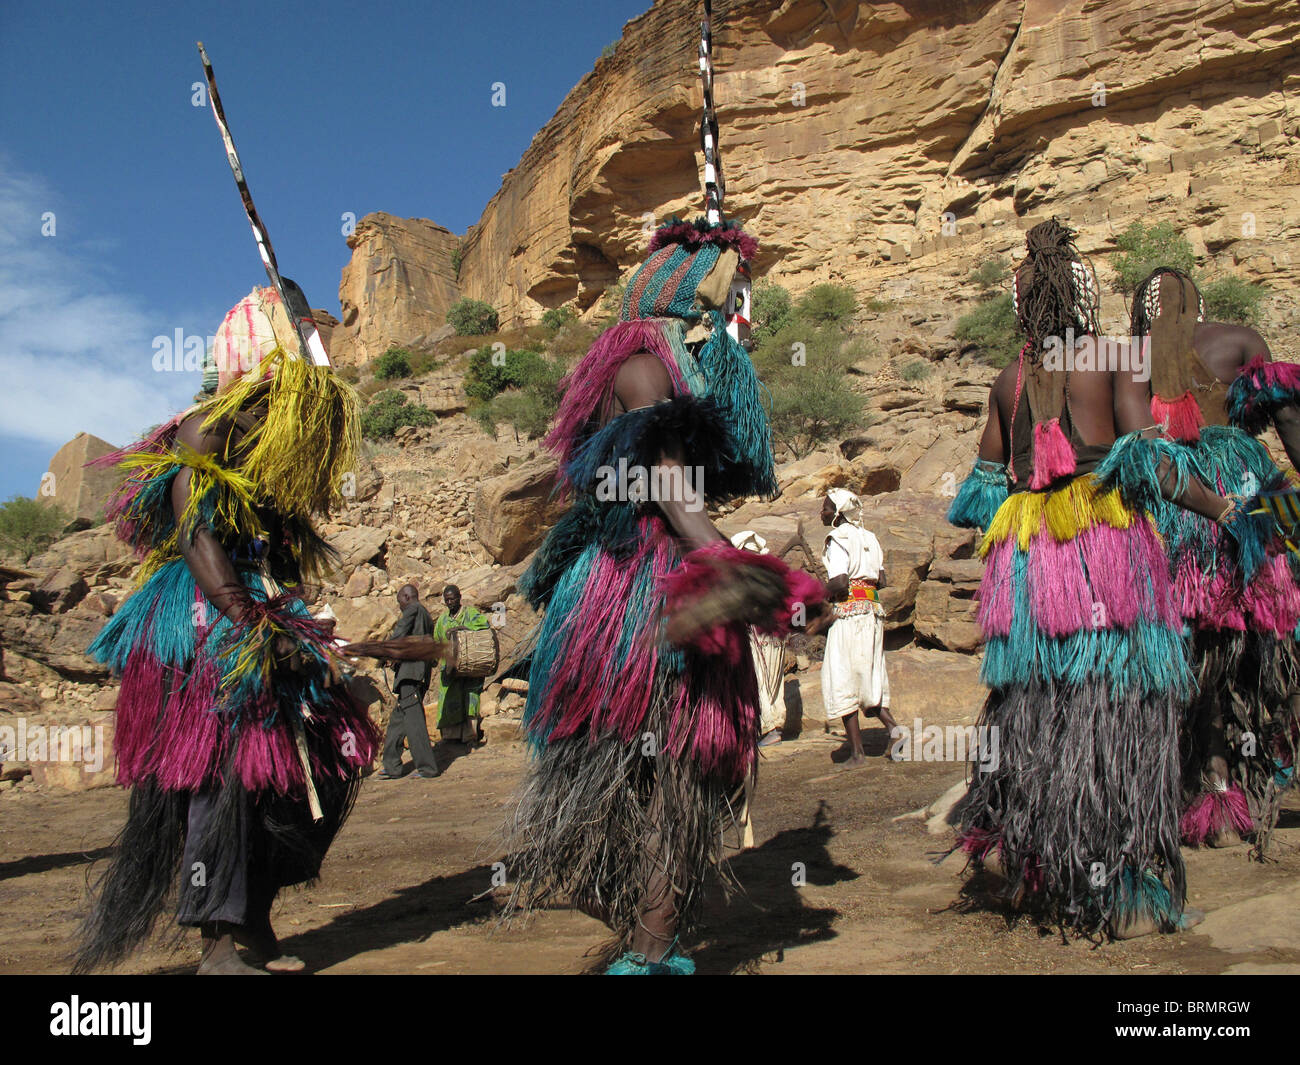 Dogones bailarines con máscaras y coloridas faldas de paja larga realizando una danza ceremonial Foto de stock